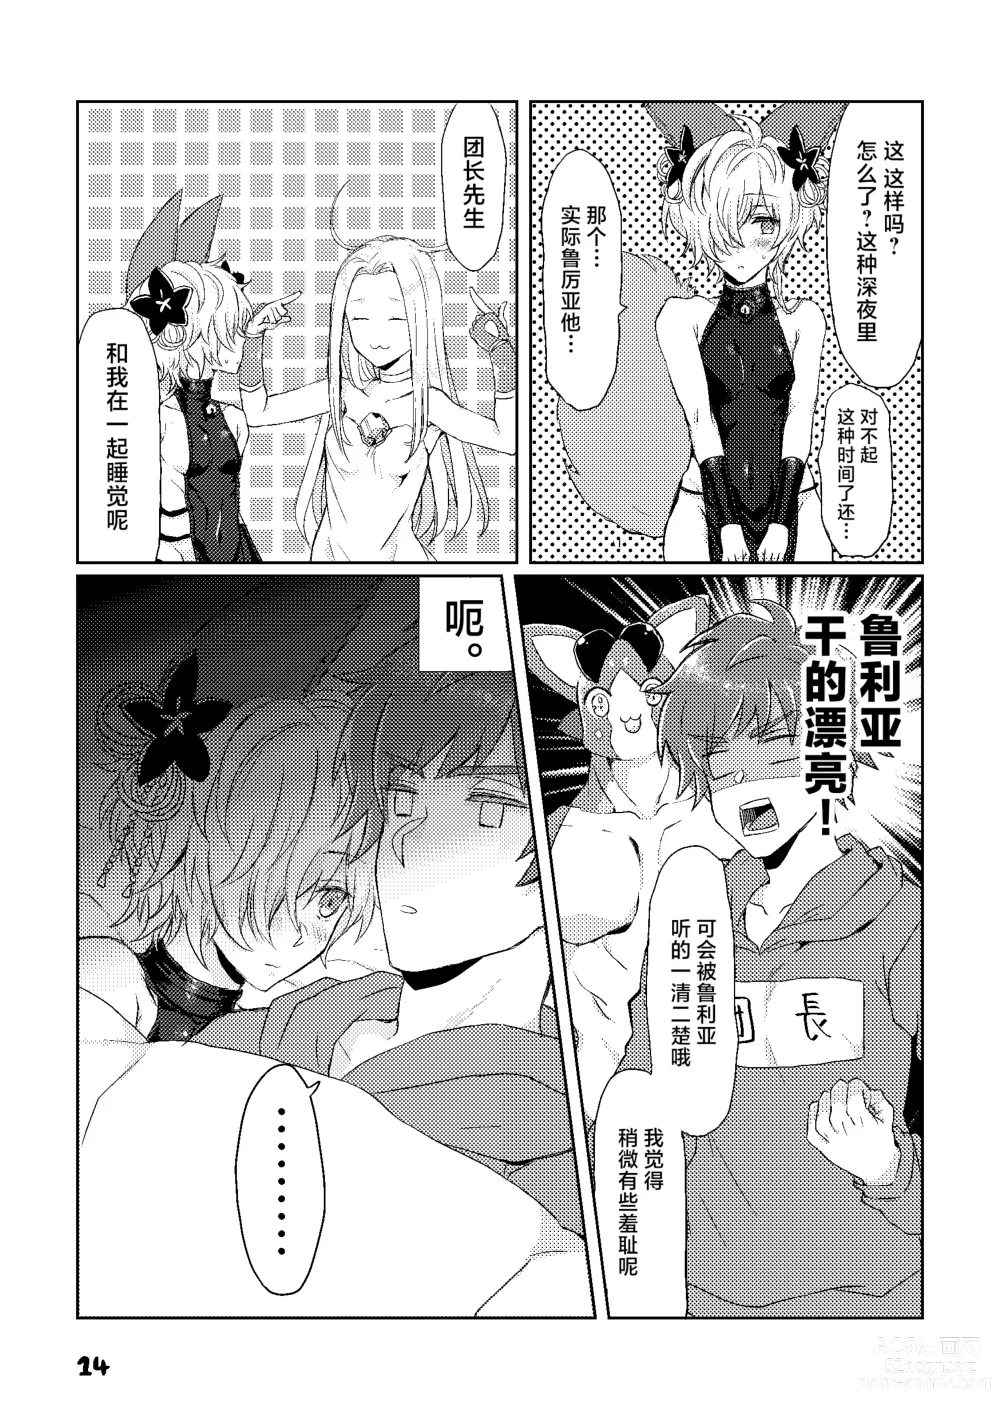 Page 14 of doujinshi Kou-kun to Mitsugetsu